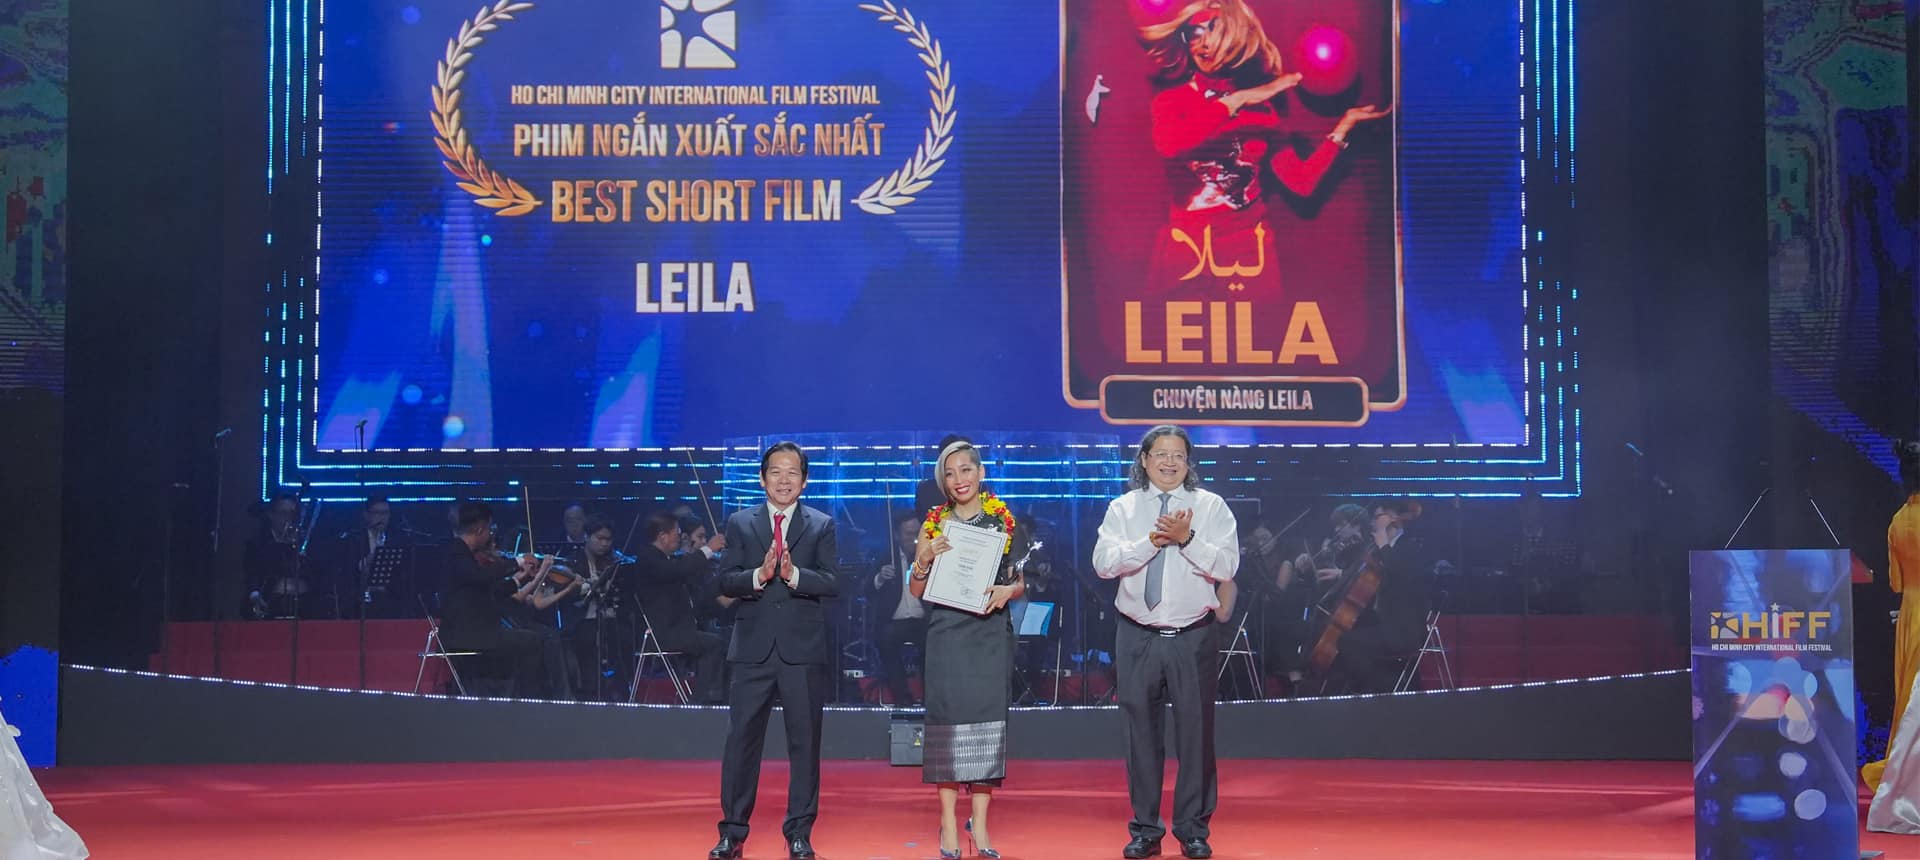 Ông Nguyễn Hoàng Tuệ - Tổng Giám đốc THADICO và ông Nguyễn Minh Nhựt - Vụ trưởng Vụ Văn hóa - Văn nghệ, Ban Tuyên giáo Trung ương trao giải hạng mục Phim ngắn xuất sắc cho Leila (Chuyện nàng Leila, Thụy Điển).